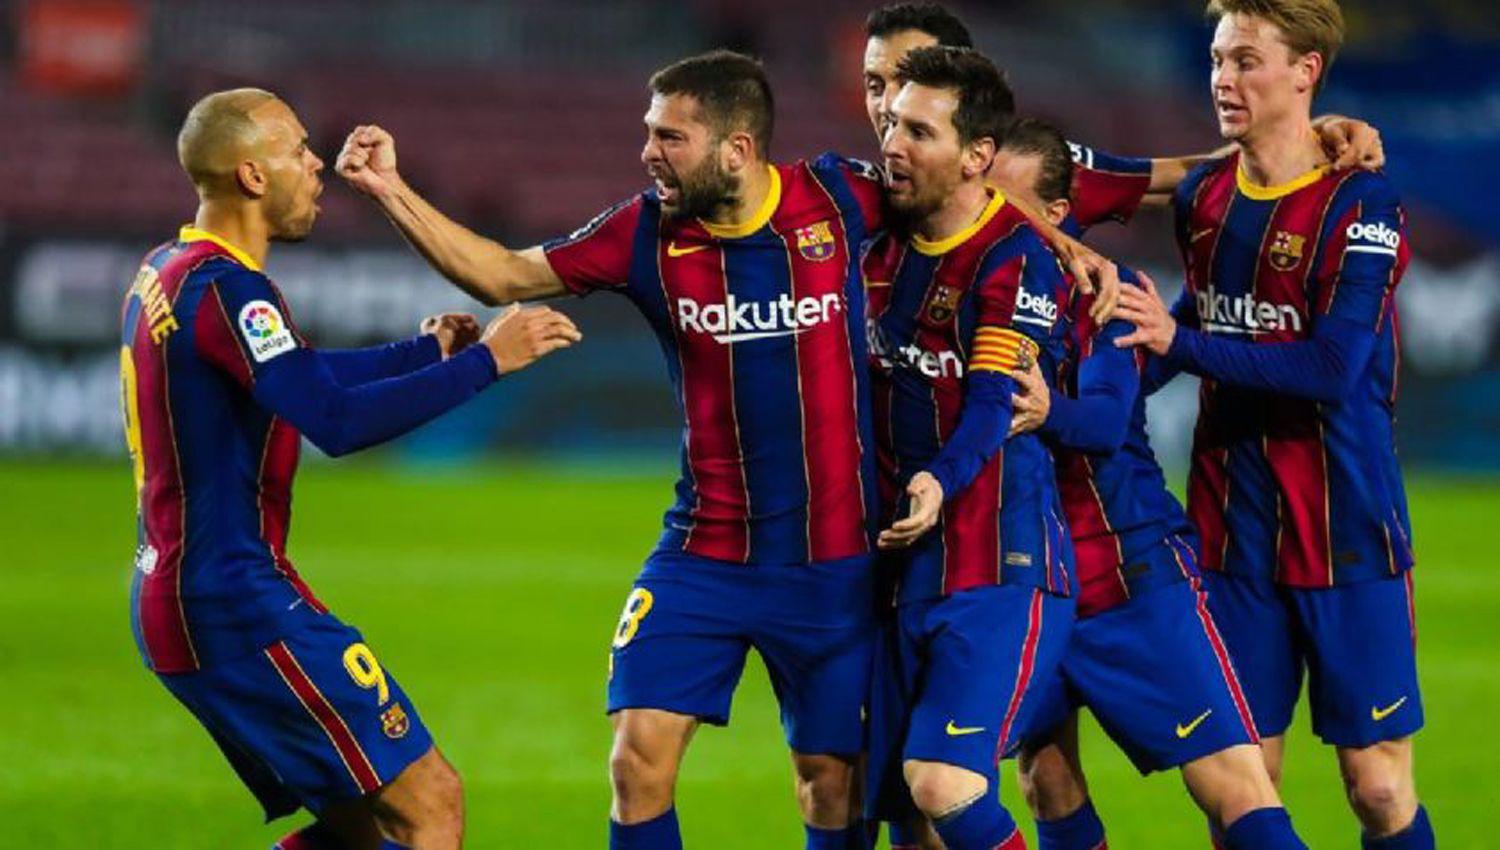 El Barcelona de Messi bajoacute a la Real Sociedad y se mete en la pelea